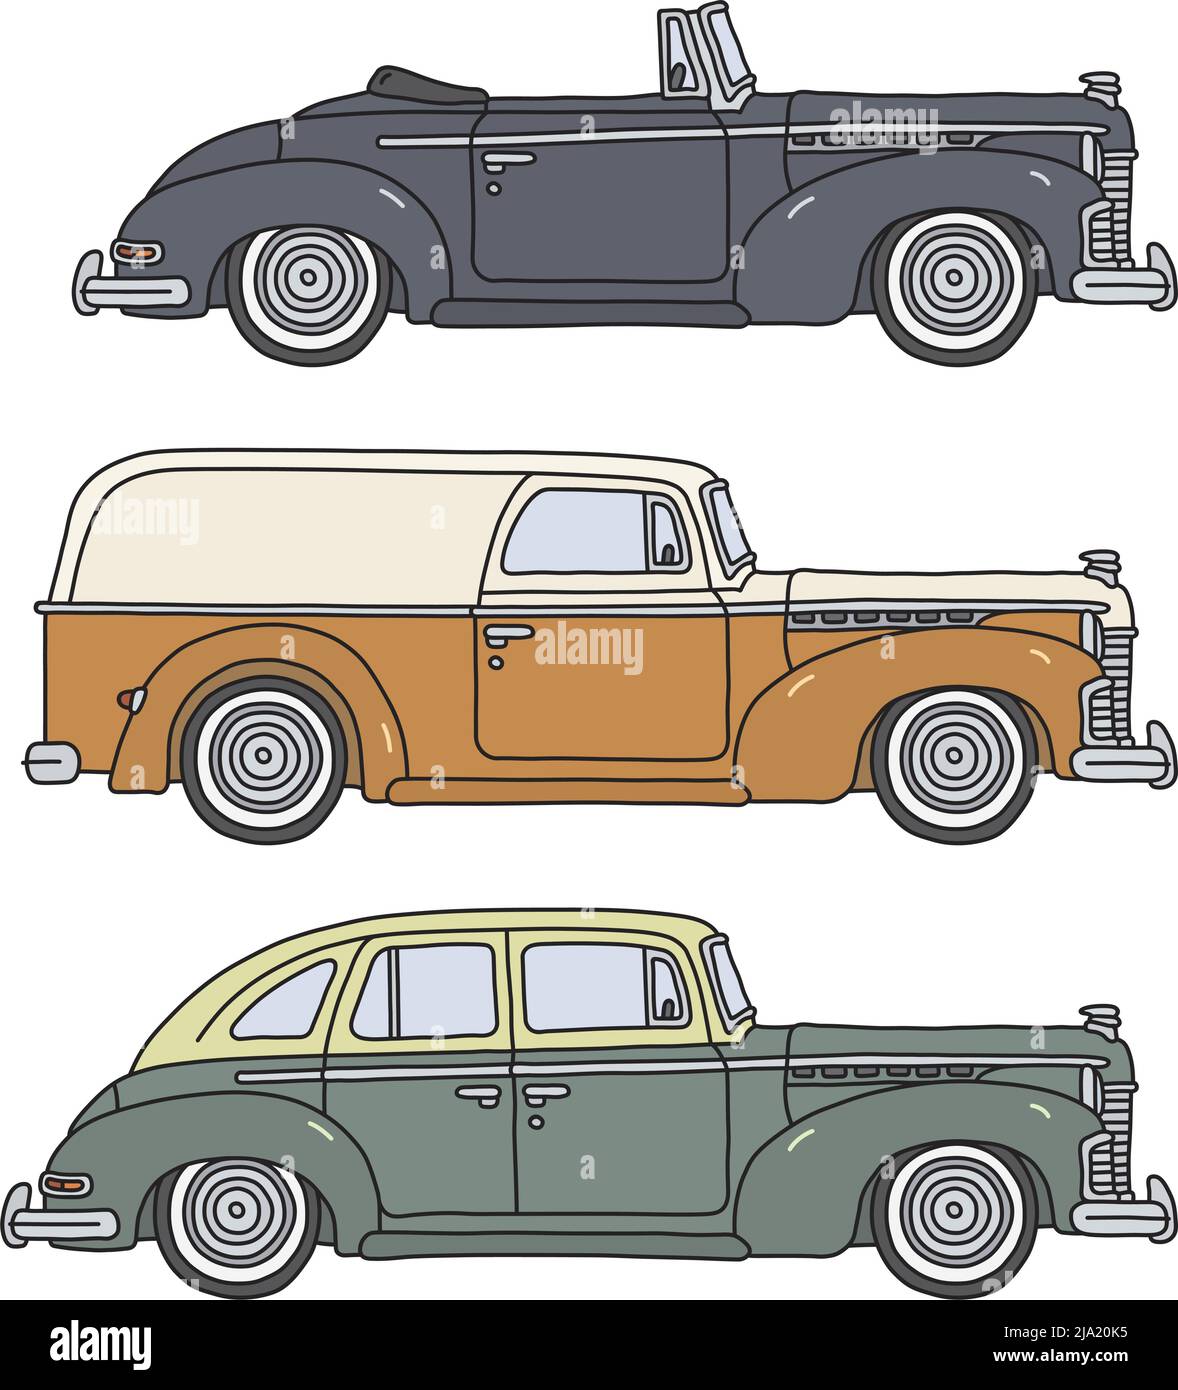 Il disegno a mano vettorizzato di tre auto retrò americane Illustrazione Vettoriale